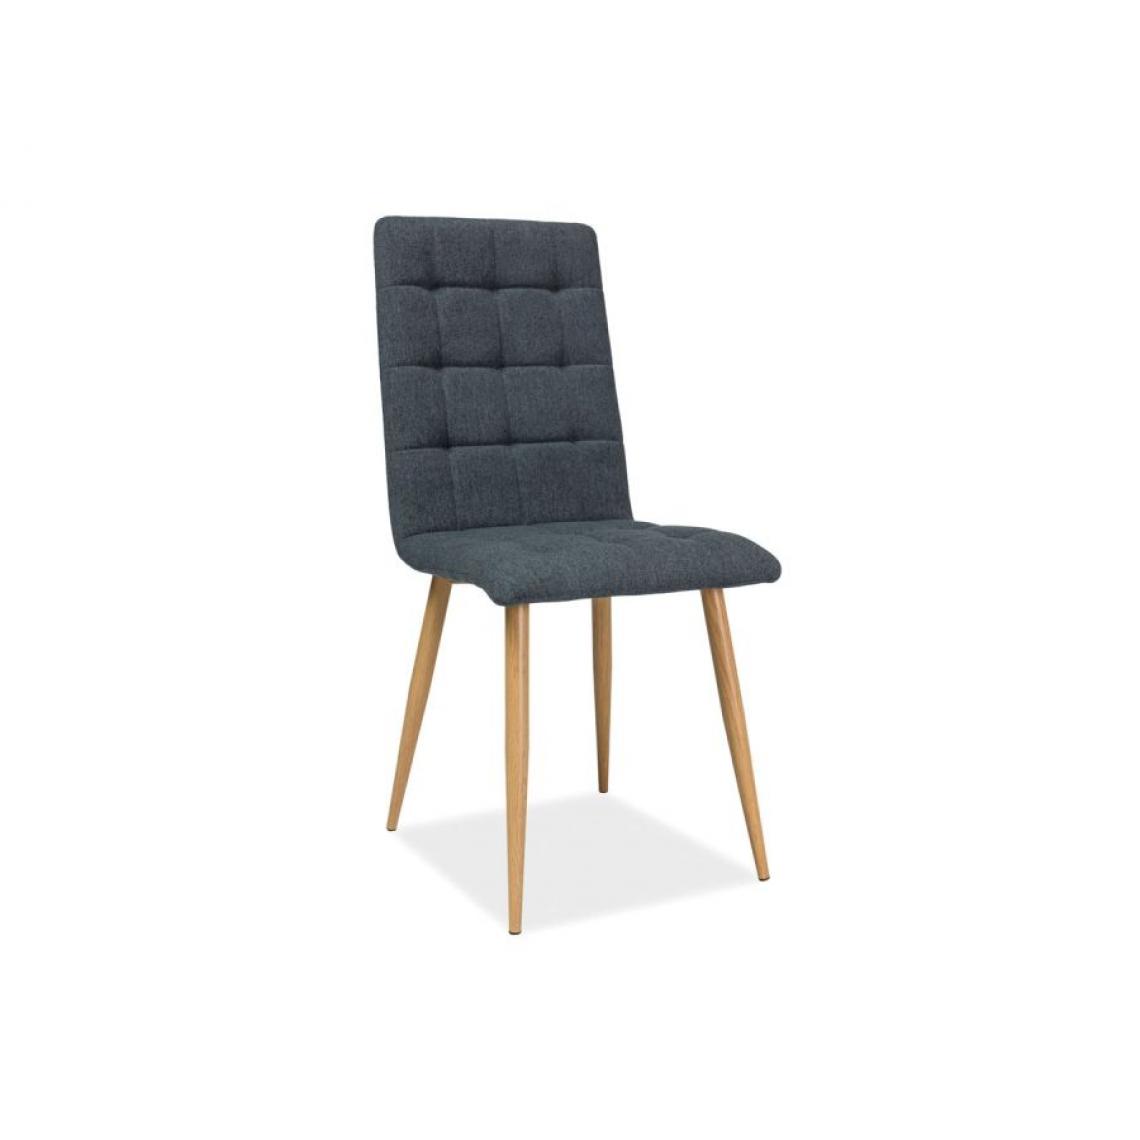 Hucoco - OTTA | Chaise moderne avec pieds en métal salon salle à manger | Dimensions 94x44x39 cm | Rembourrée en tissu | Ergonomique - Gris - Chaises